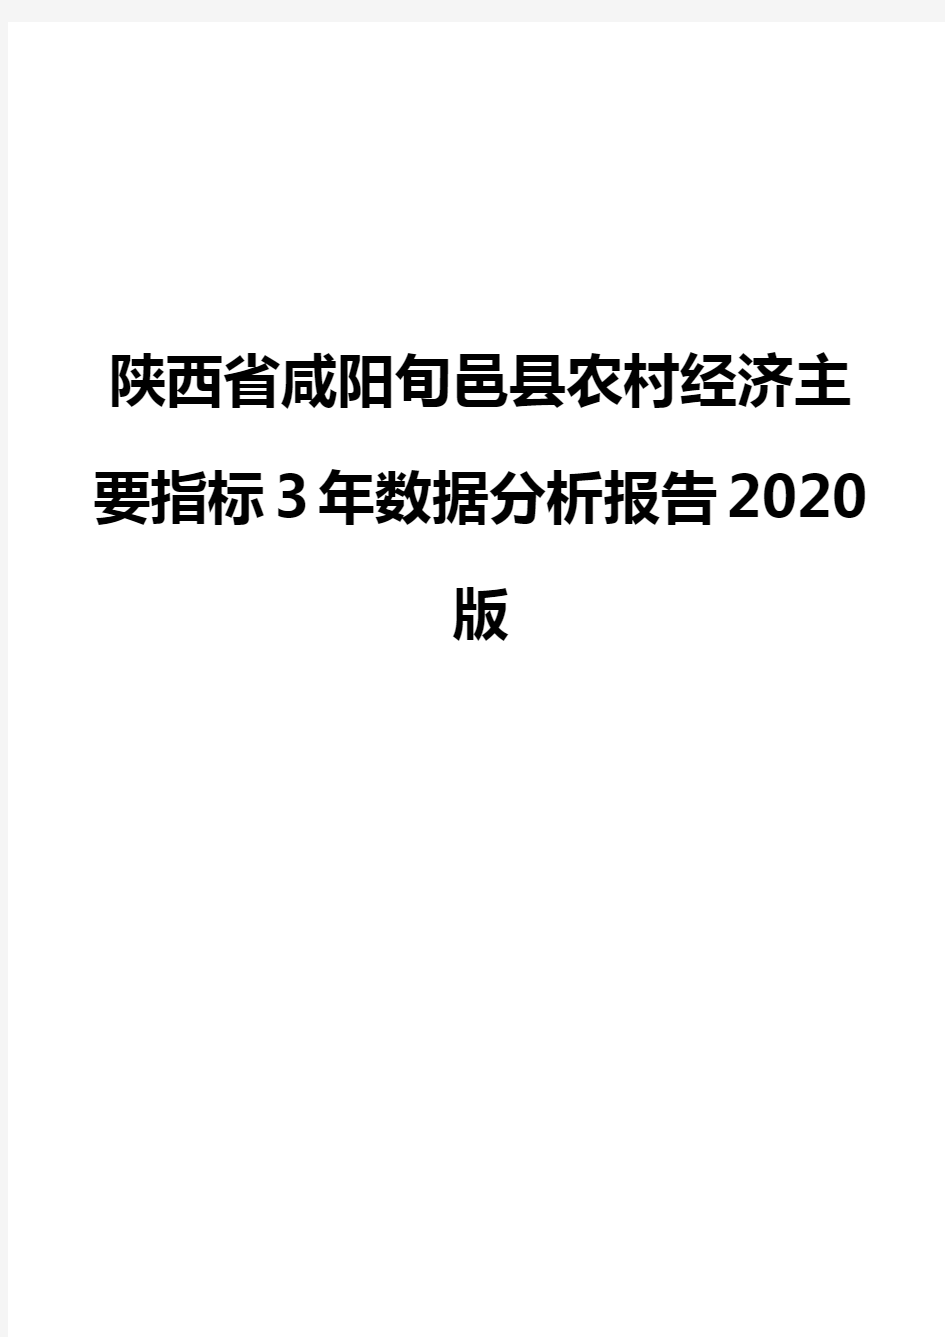 陕西省咸阳旬邑县农村经济主要指标3年数据分析报告2020版